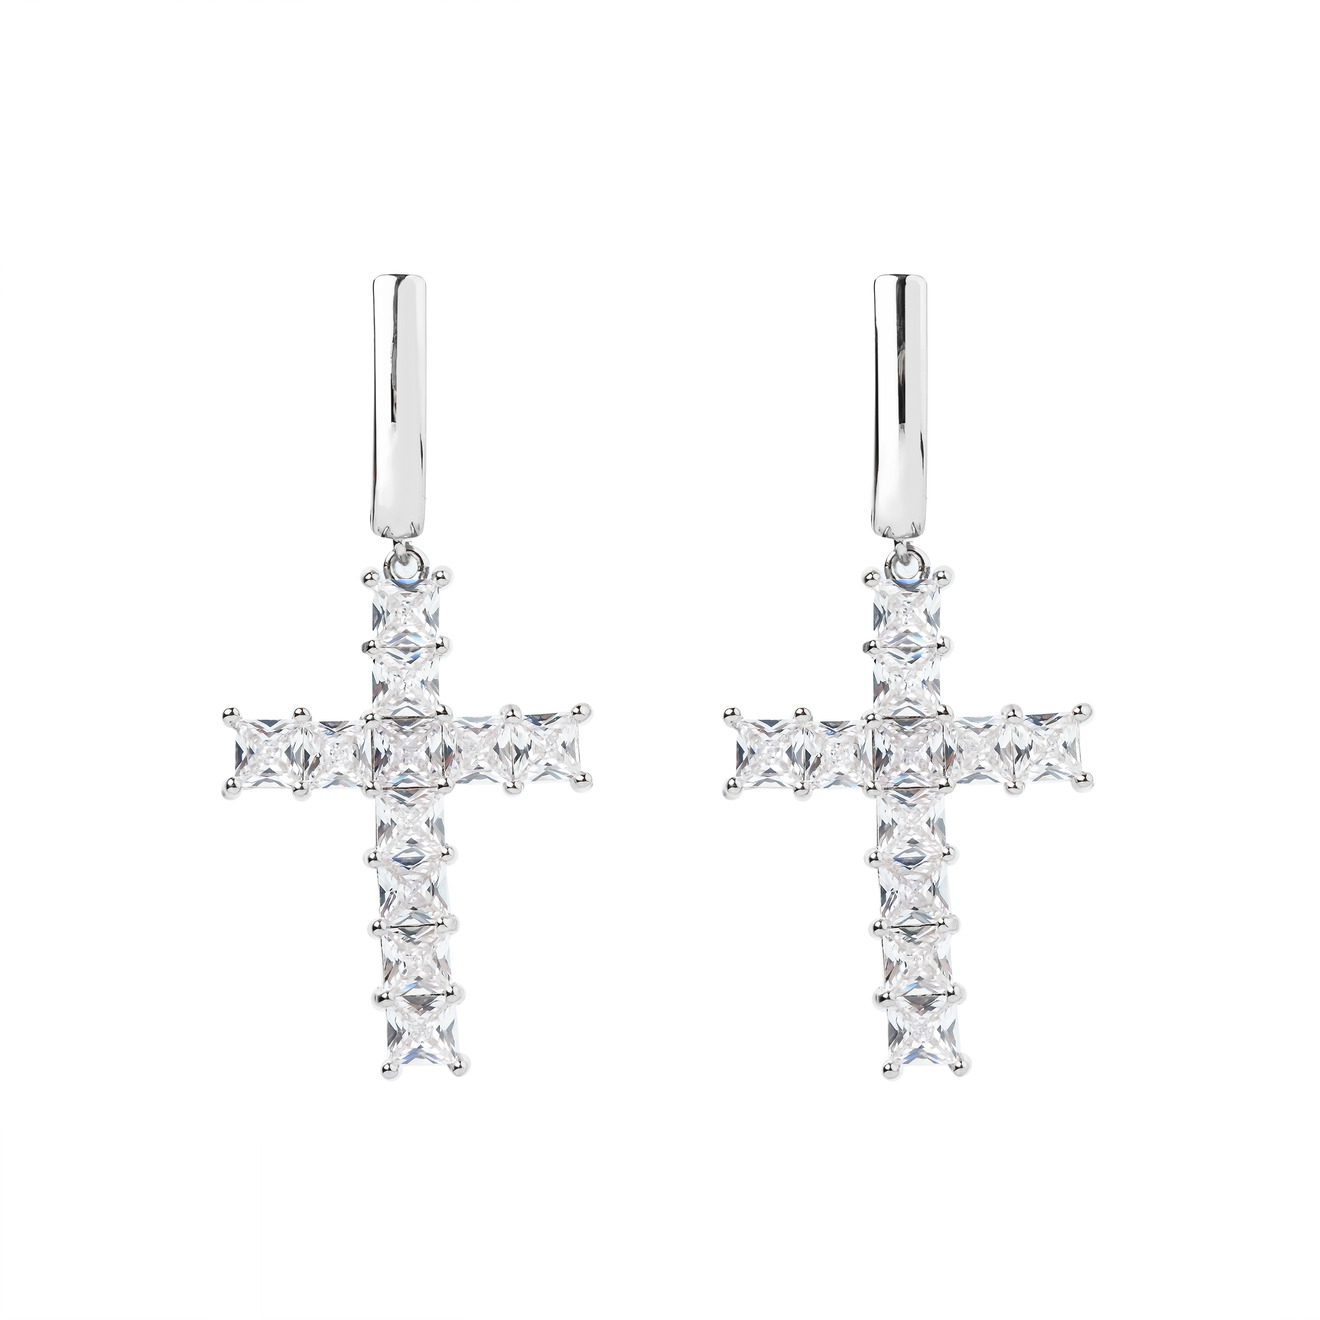 Herald Percy Серебристые серьги-кресты с кристаллами herald percy серебристые серьги бабочки с кристаллами